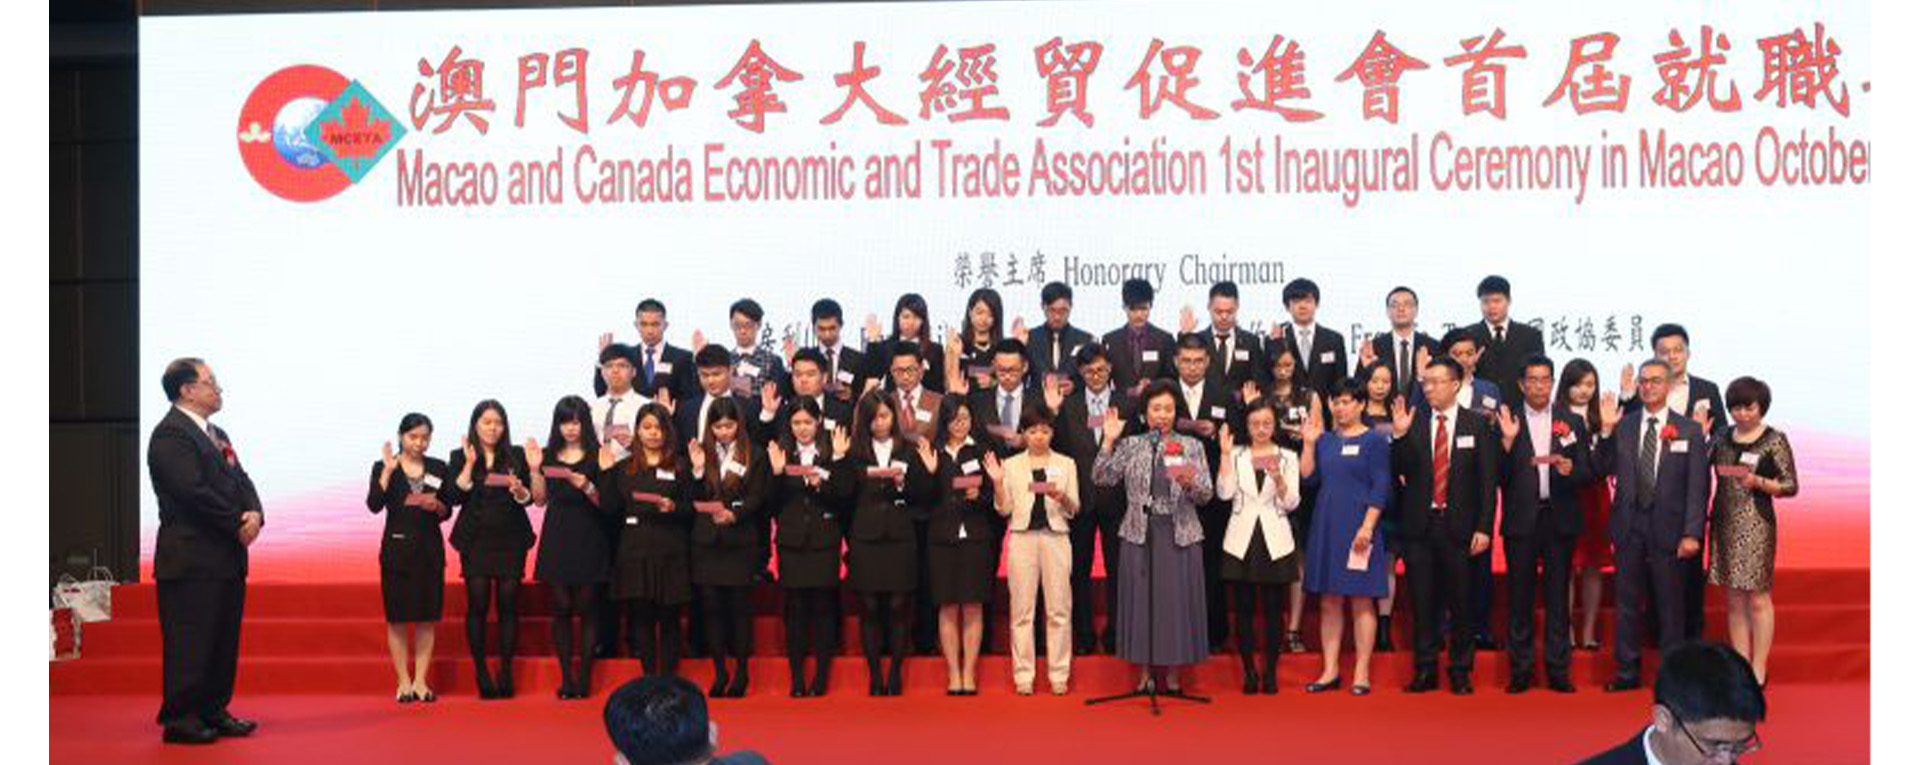 澳門加拿大經貿促進會首屆就職典禮2015